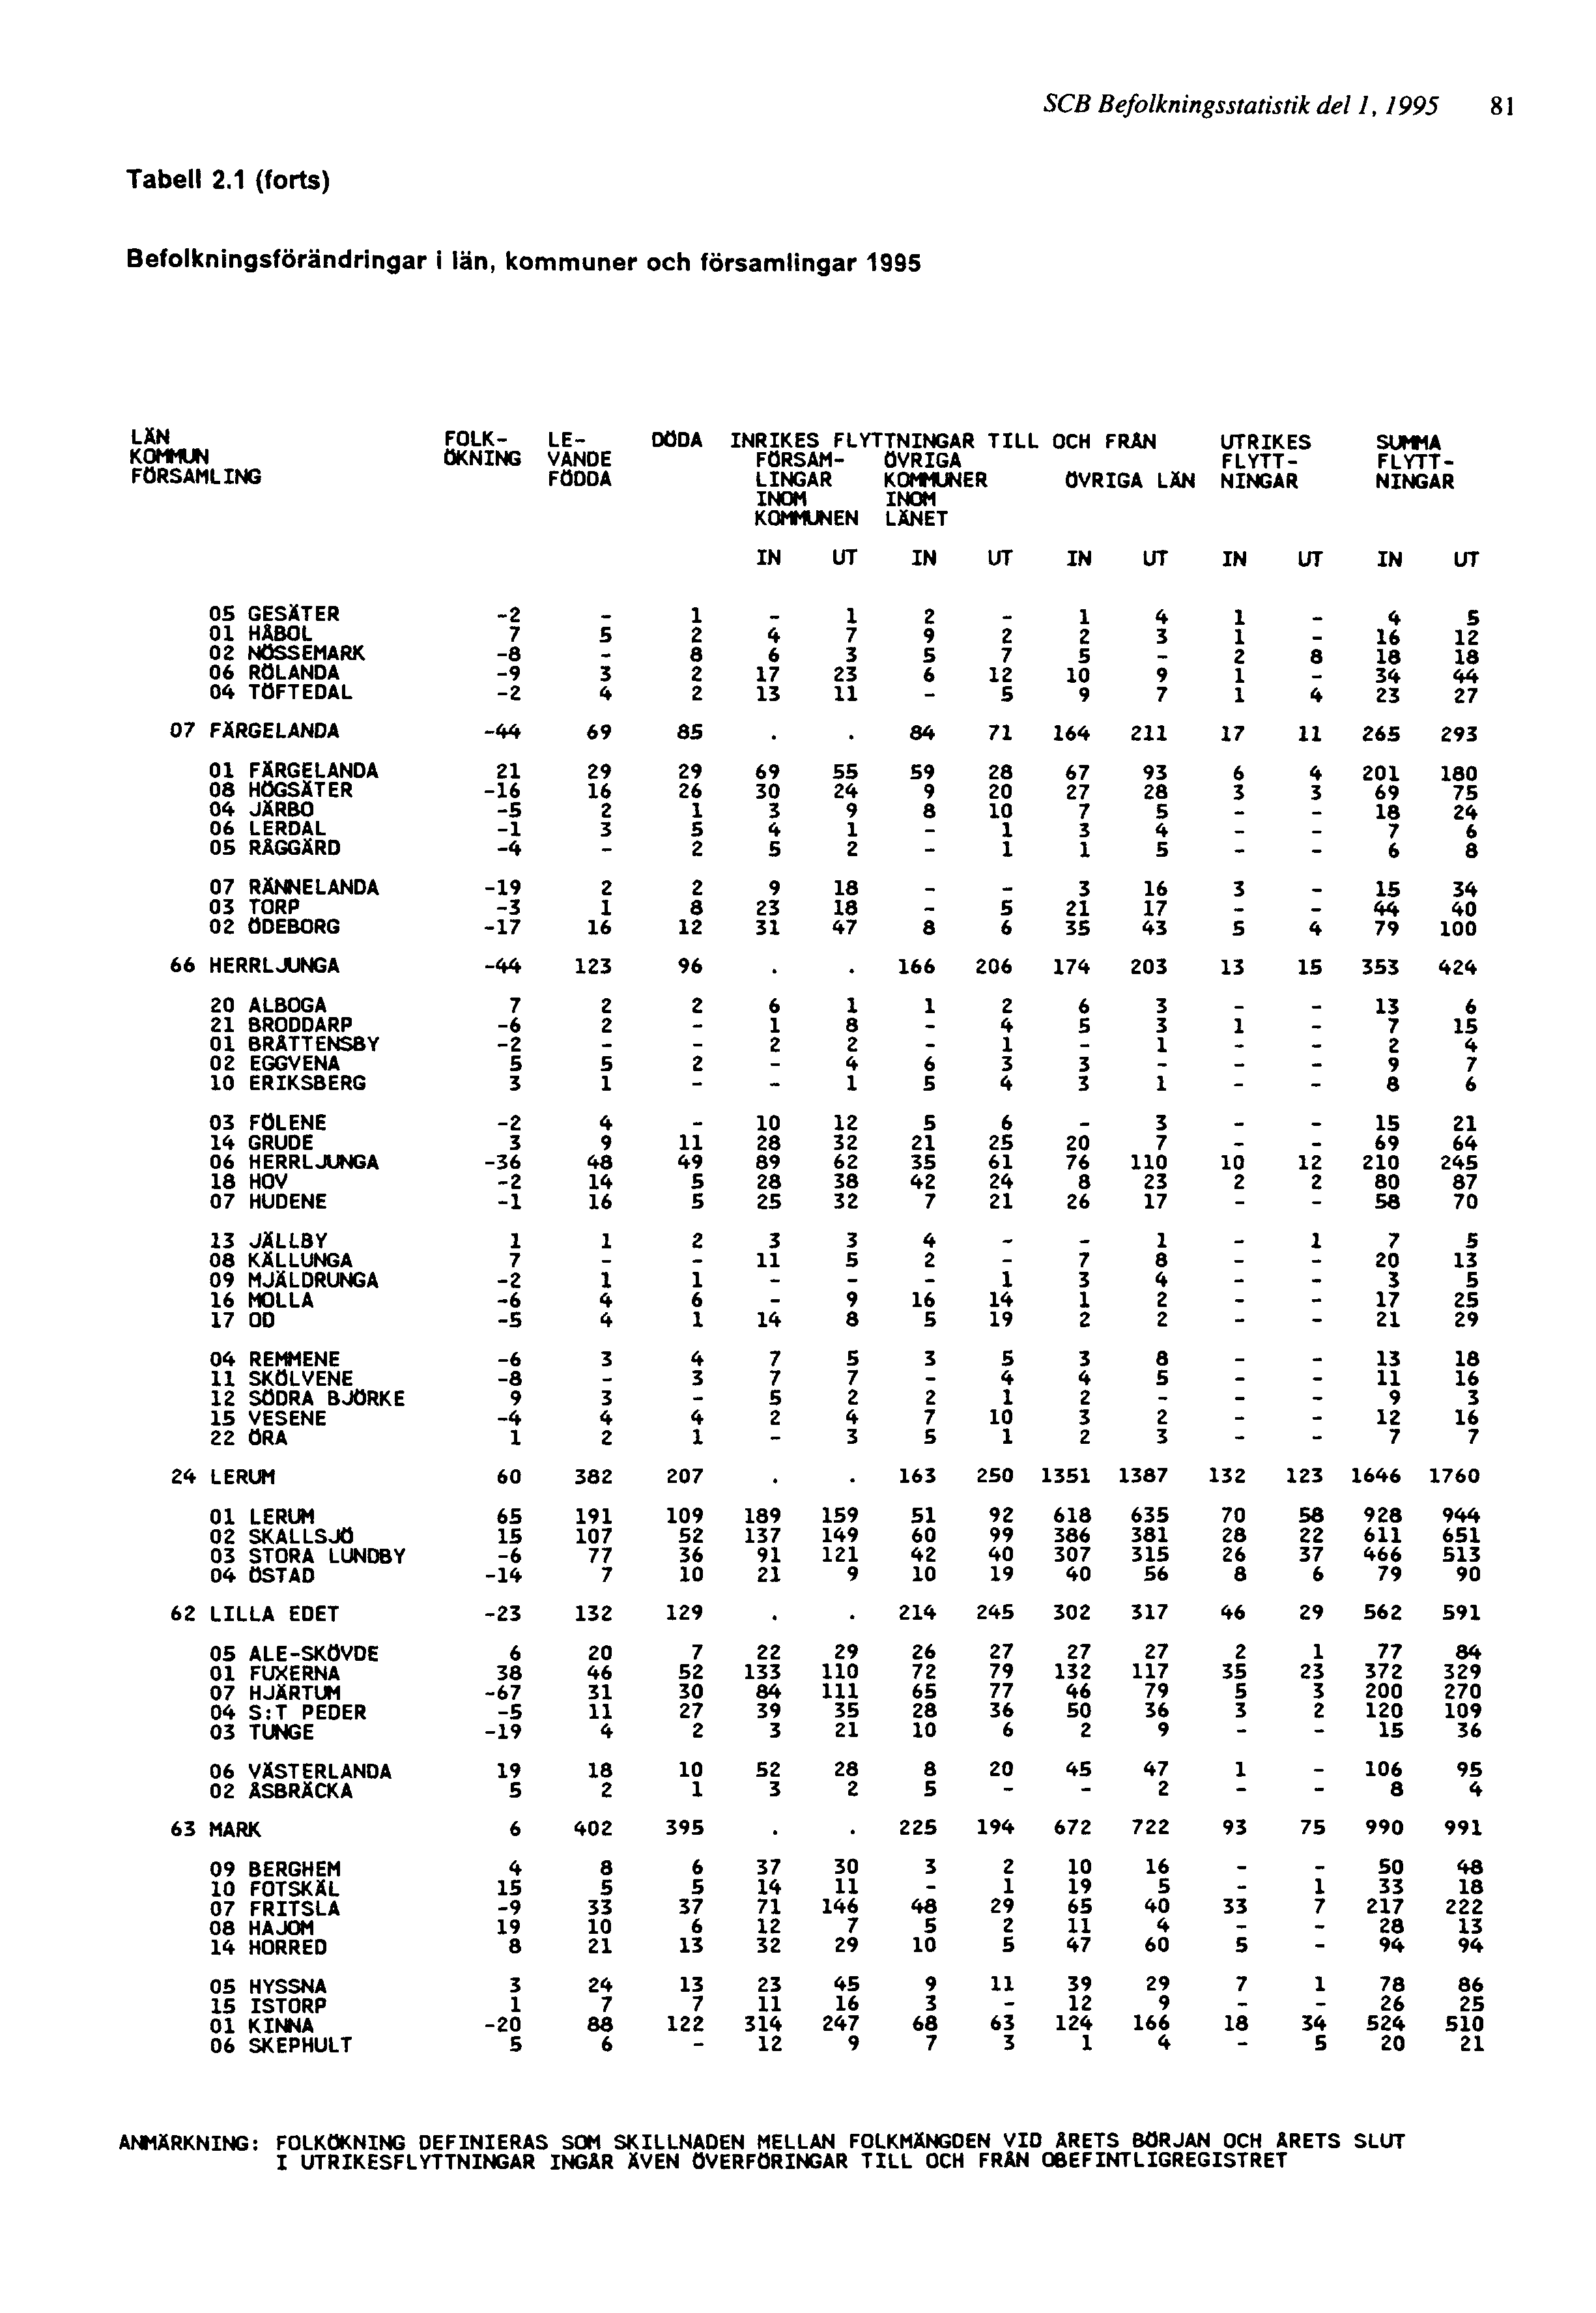 SCB Befolkningsstatistik del 1, 1995 81 ANMÄRKNING: FOLKÖKNING DEFINIERAS SOM SKILLNADEN MELLAN FOLKMÄNGDEN